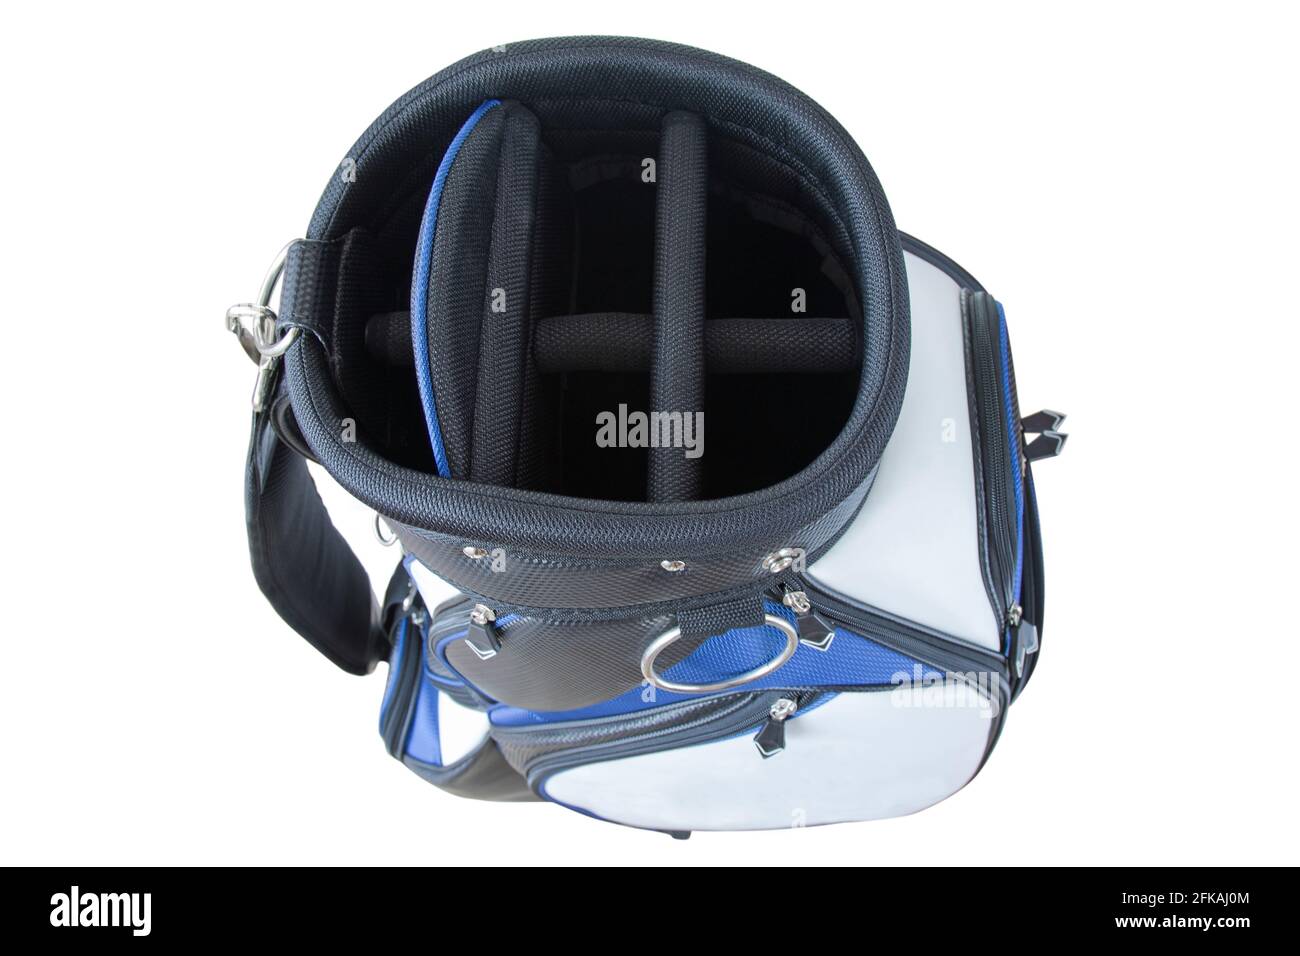 Draufsicht auf eine Golftasche mit mehreren Taschen in Blau Weiß schwarz mit Schnellverschluss-Schulterriemen isoliert auf weiß Hintergrund Stockfoto